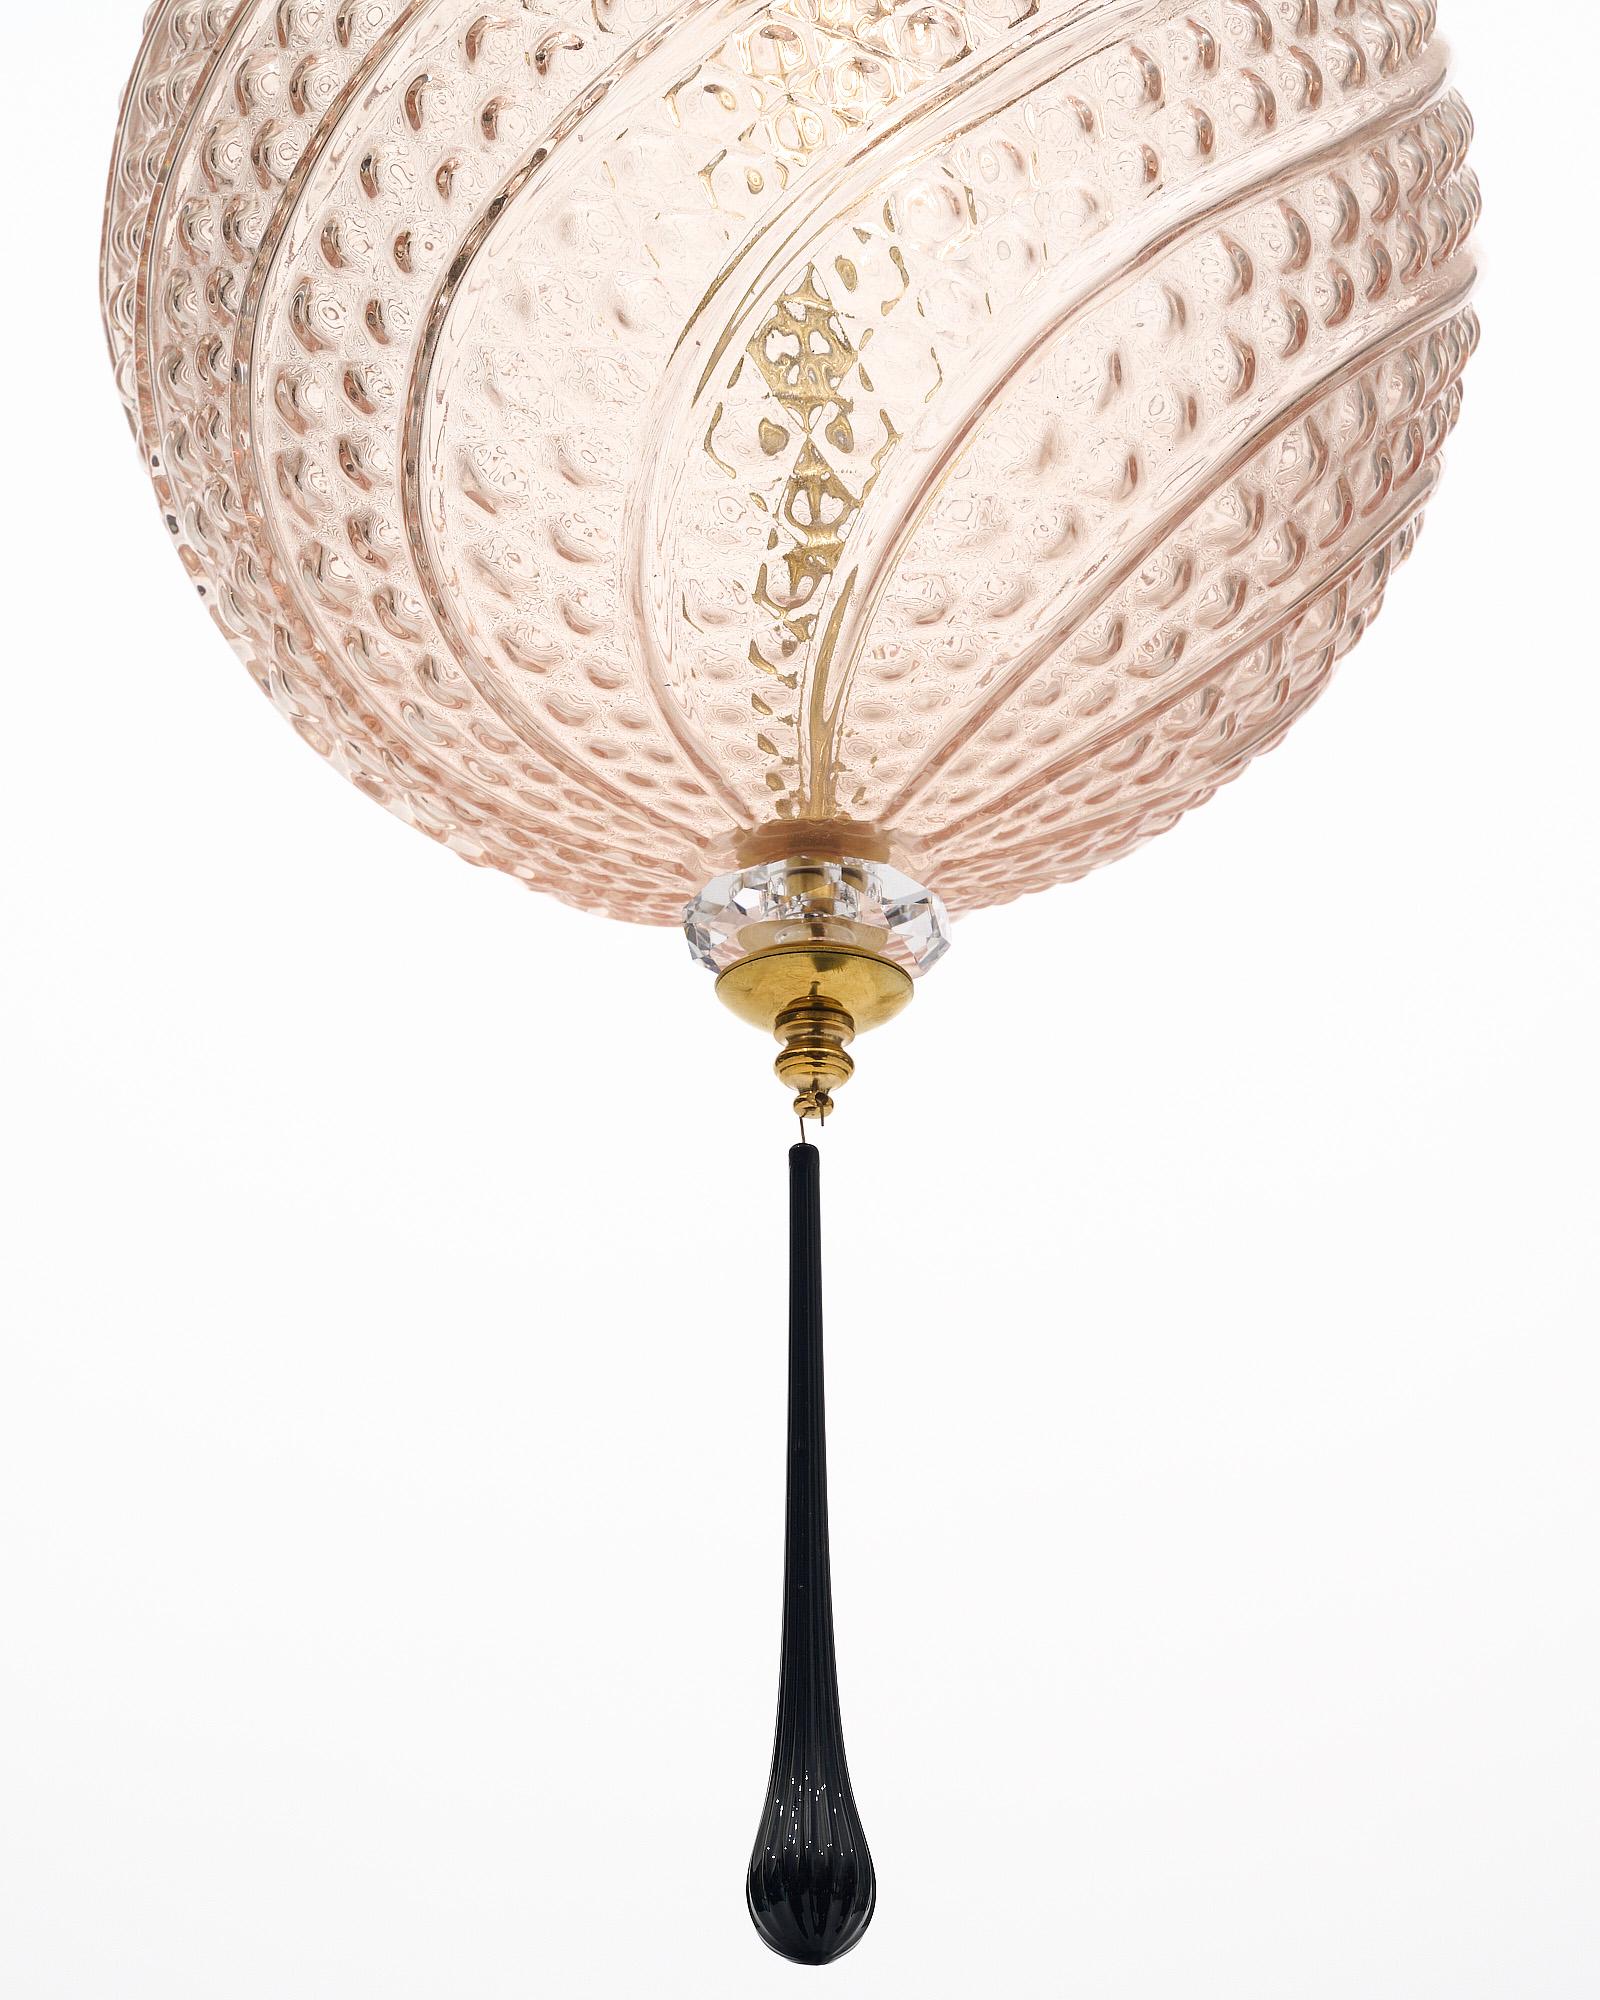 Ensemble de quatre lanternes en verre de Murano soufflé à la main sur des structures en laiton. Chaque luminaire présente un magnifique globe en verre rose avec une texture délicate estampée qui s'enroule autour de la forme. Des éléments en verre